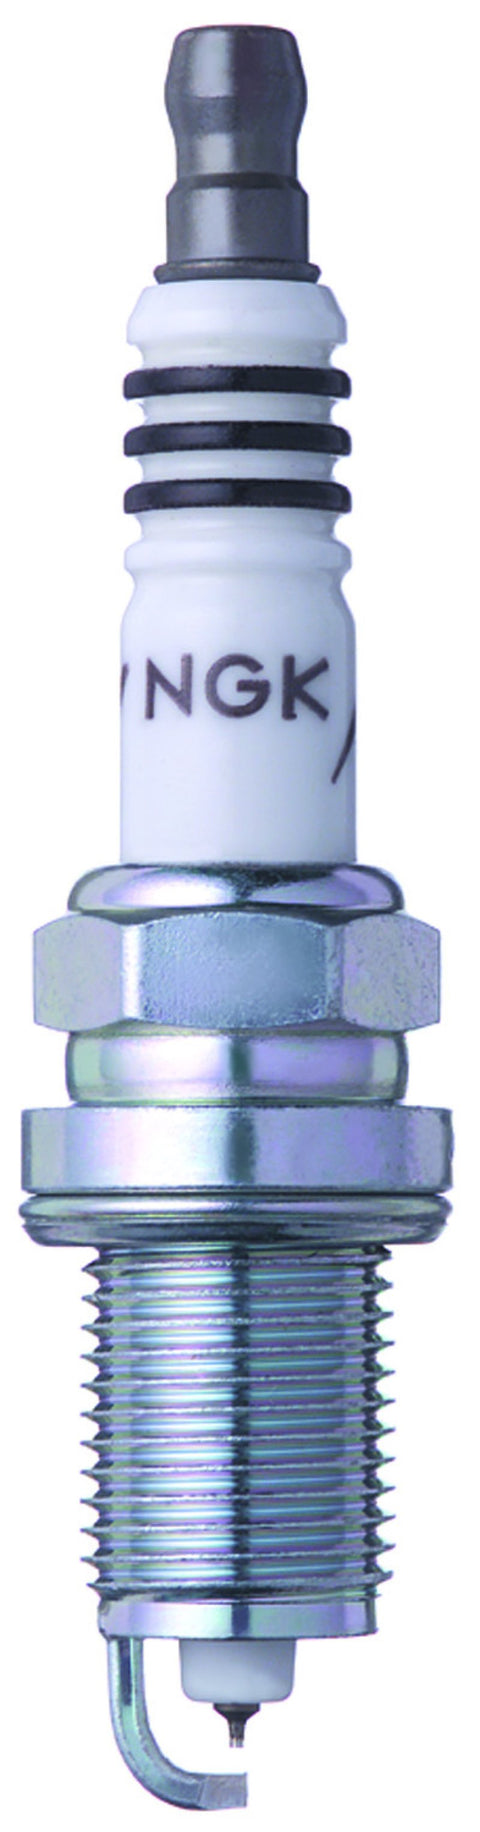 NGK Iridium Spark Plugs | 1994-1999 Acura Integra (2477-1)